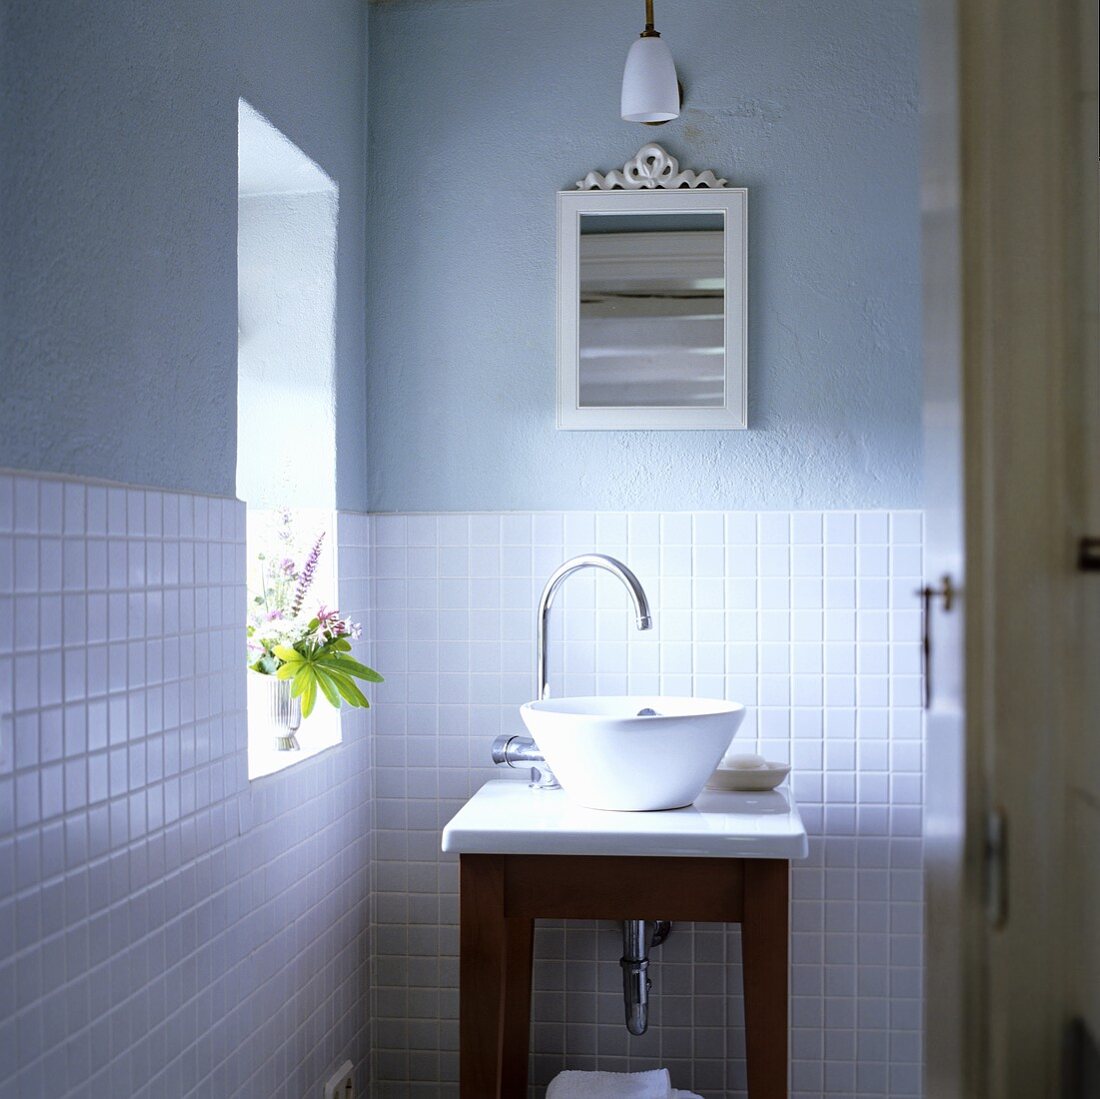 Waschbecken in einem Badezimmer – Bild kaufen – 707304 living4media